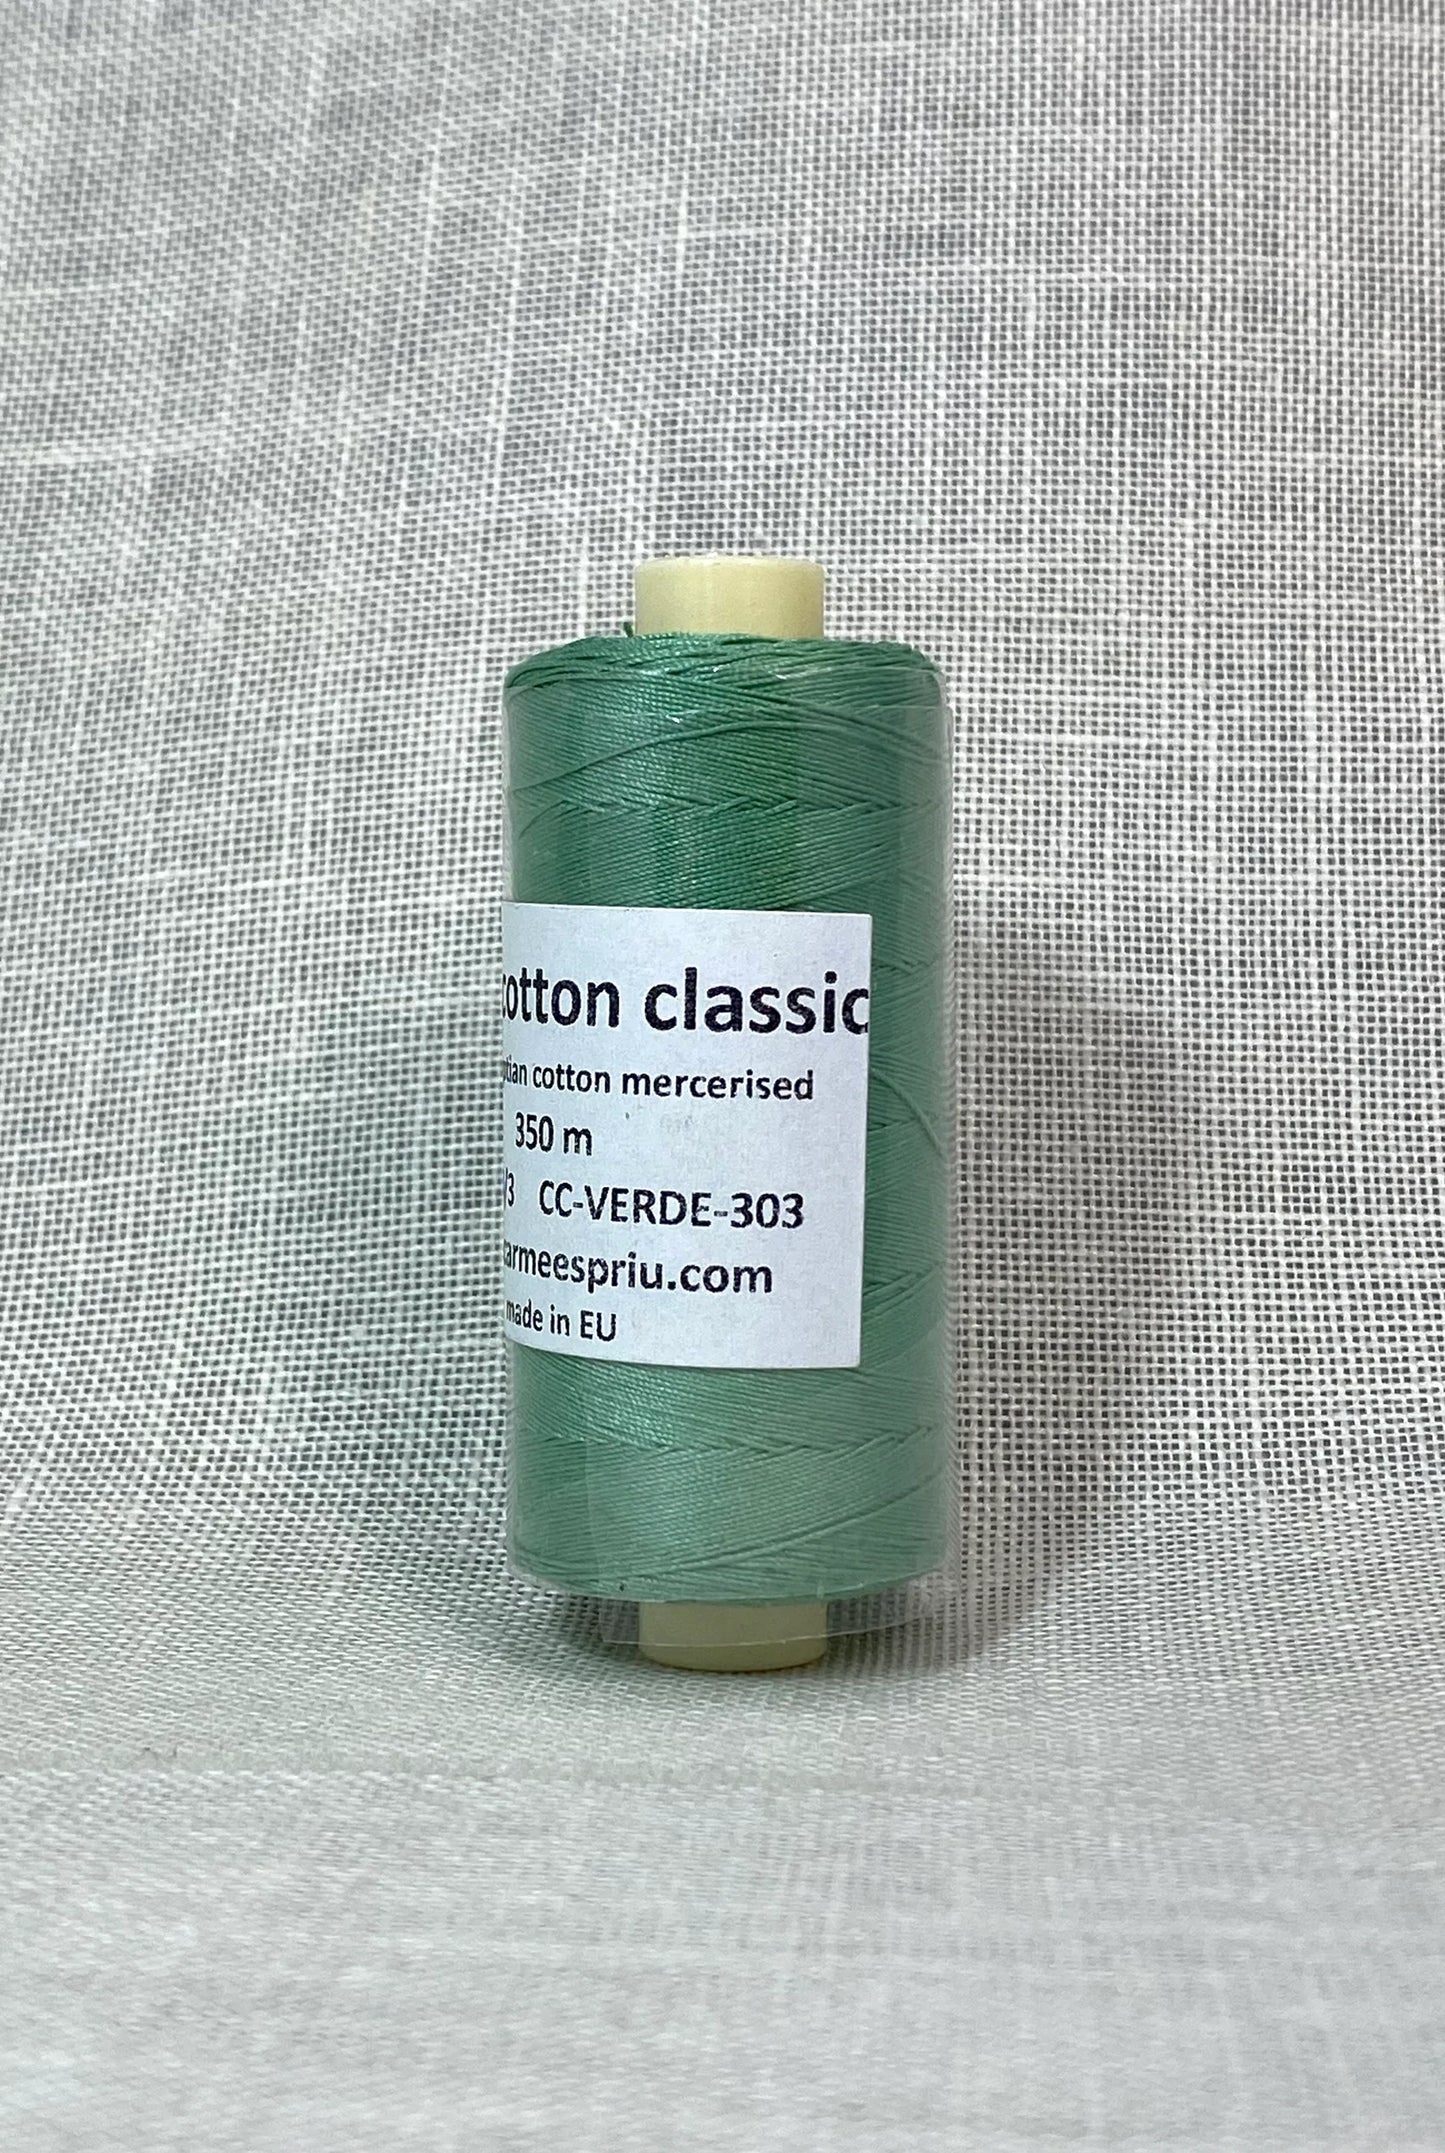 Basic cotton classic nº 303